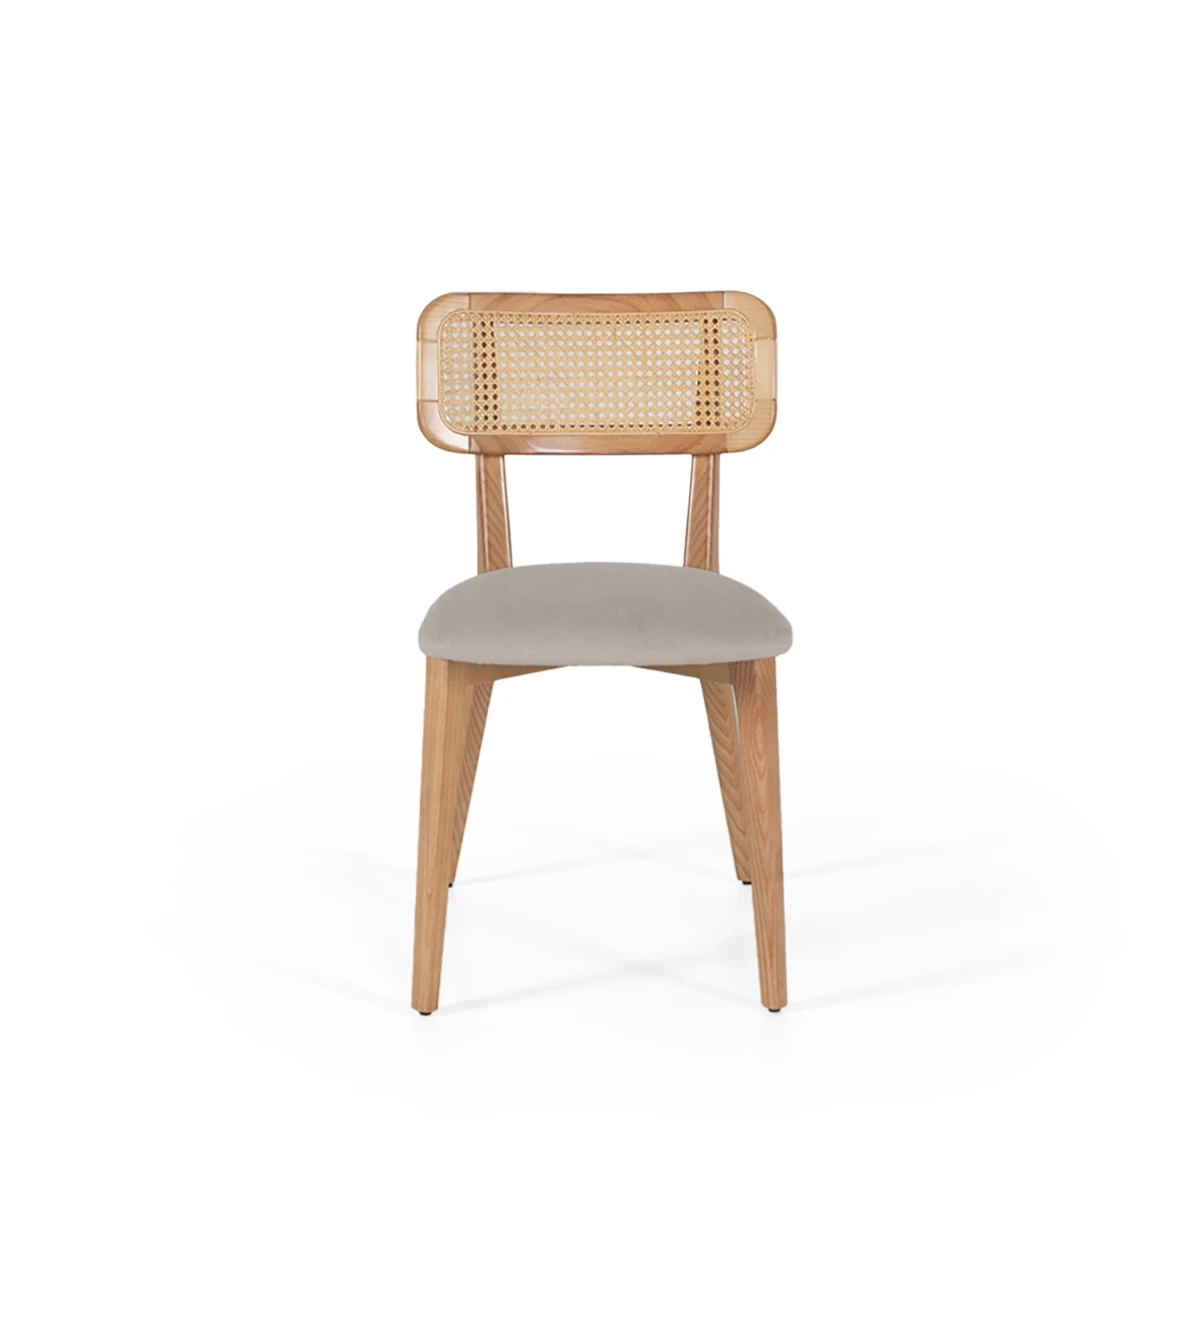 Cadeira de madeira, com pormenor de rattan nas costas e assento estofado a tecido